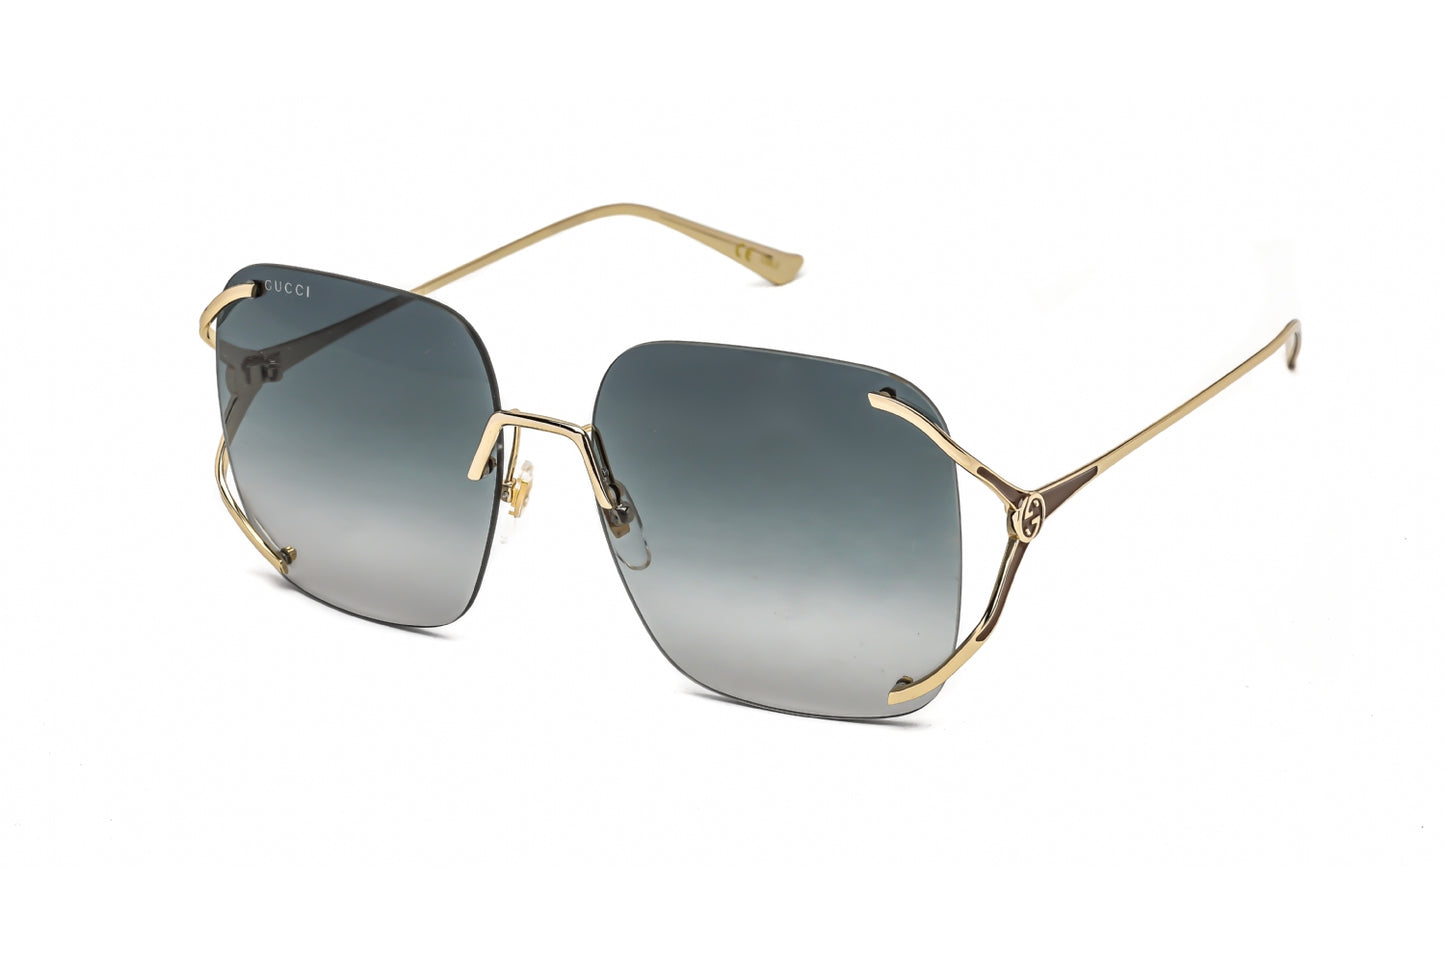 Gucci GG0646S-001 60mm New Sunglasses